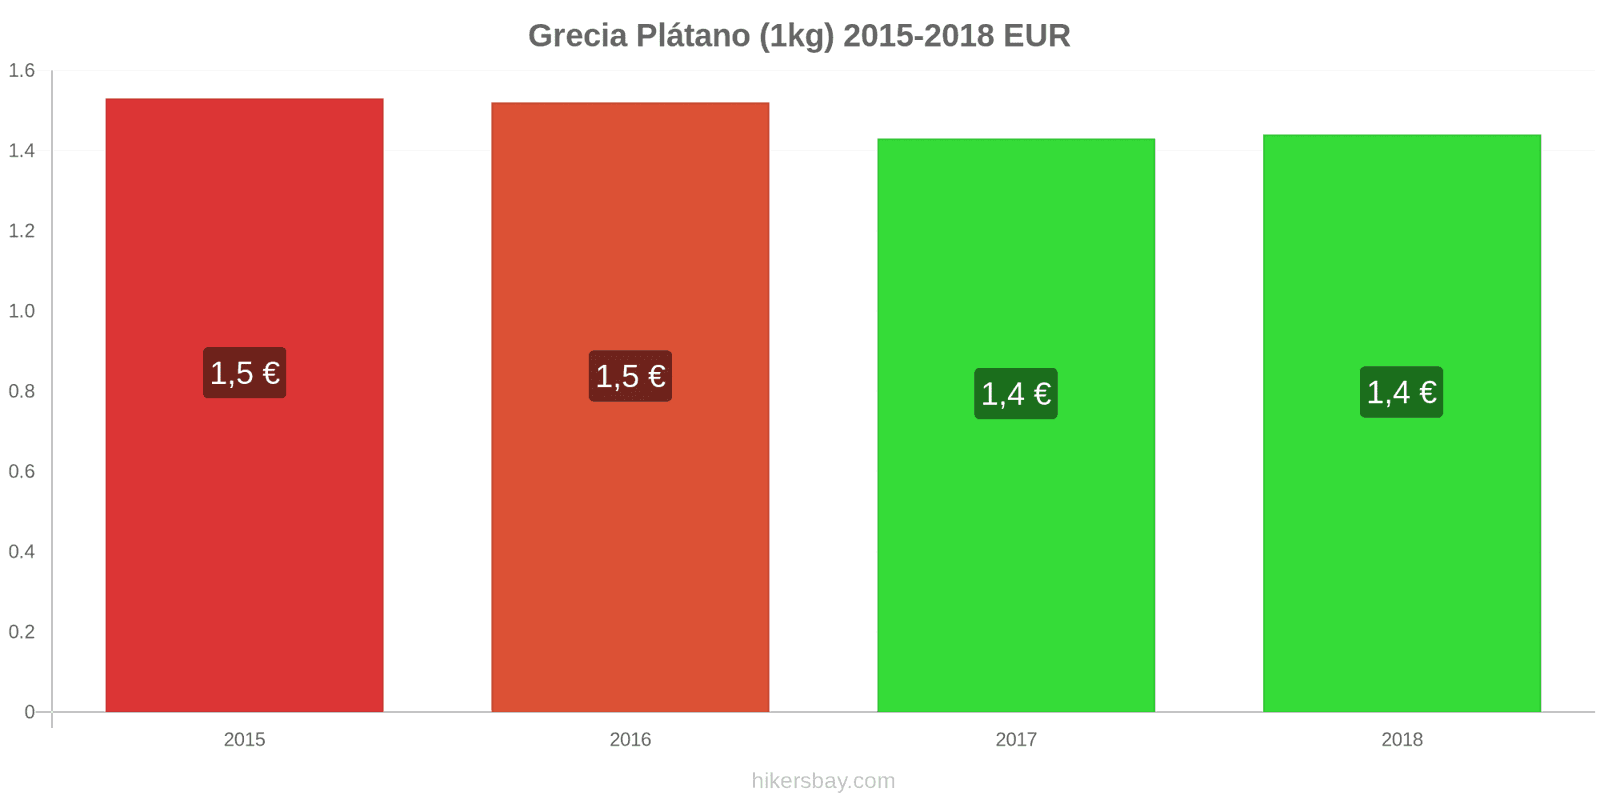 Grecia cambios de precios Plátanos (1kg) hikersbay.com